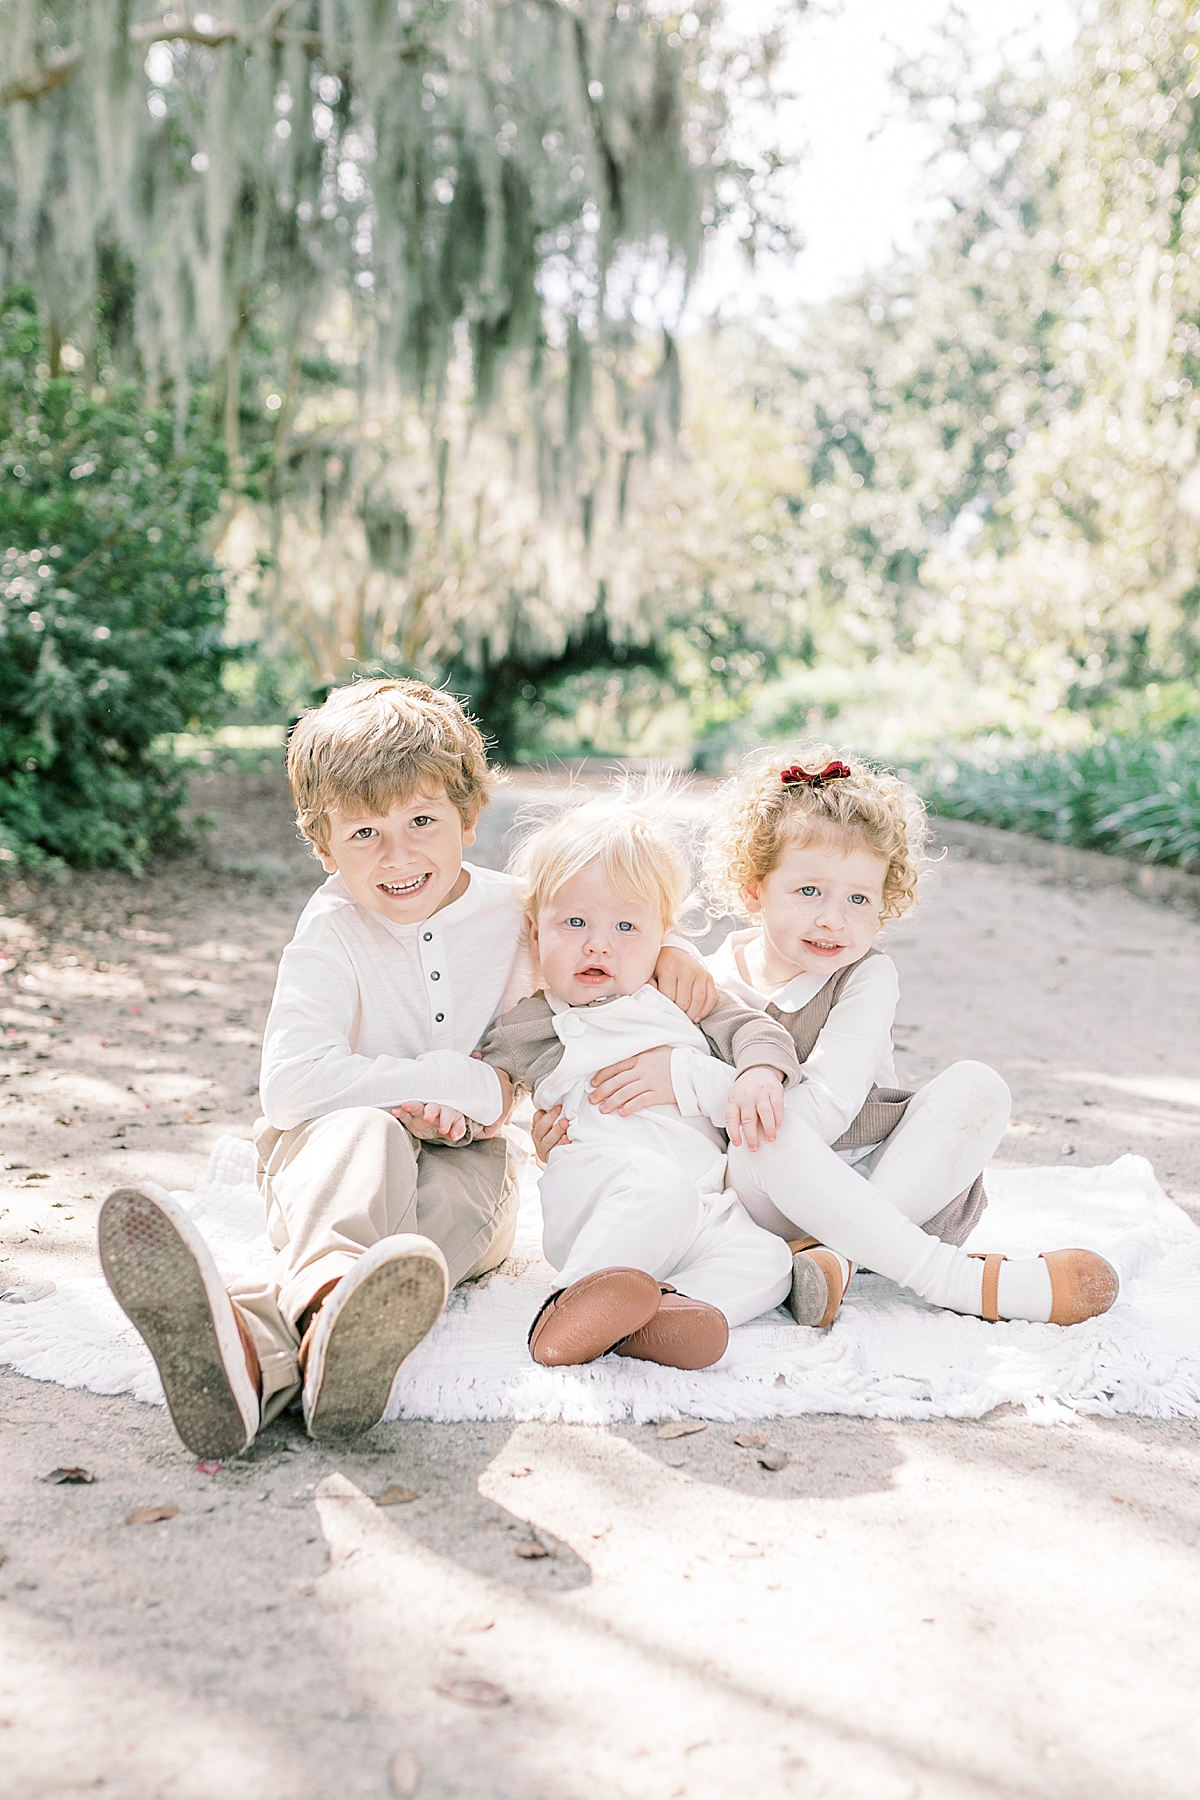 Sibling photos at Hampton Park in Charleston, SC. Photos by Caitlyn Motycka Photography.